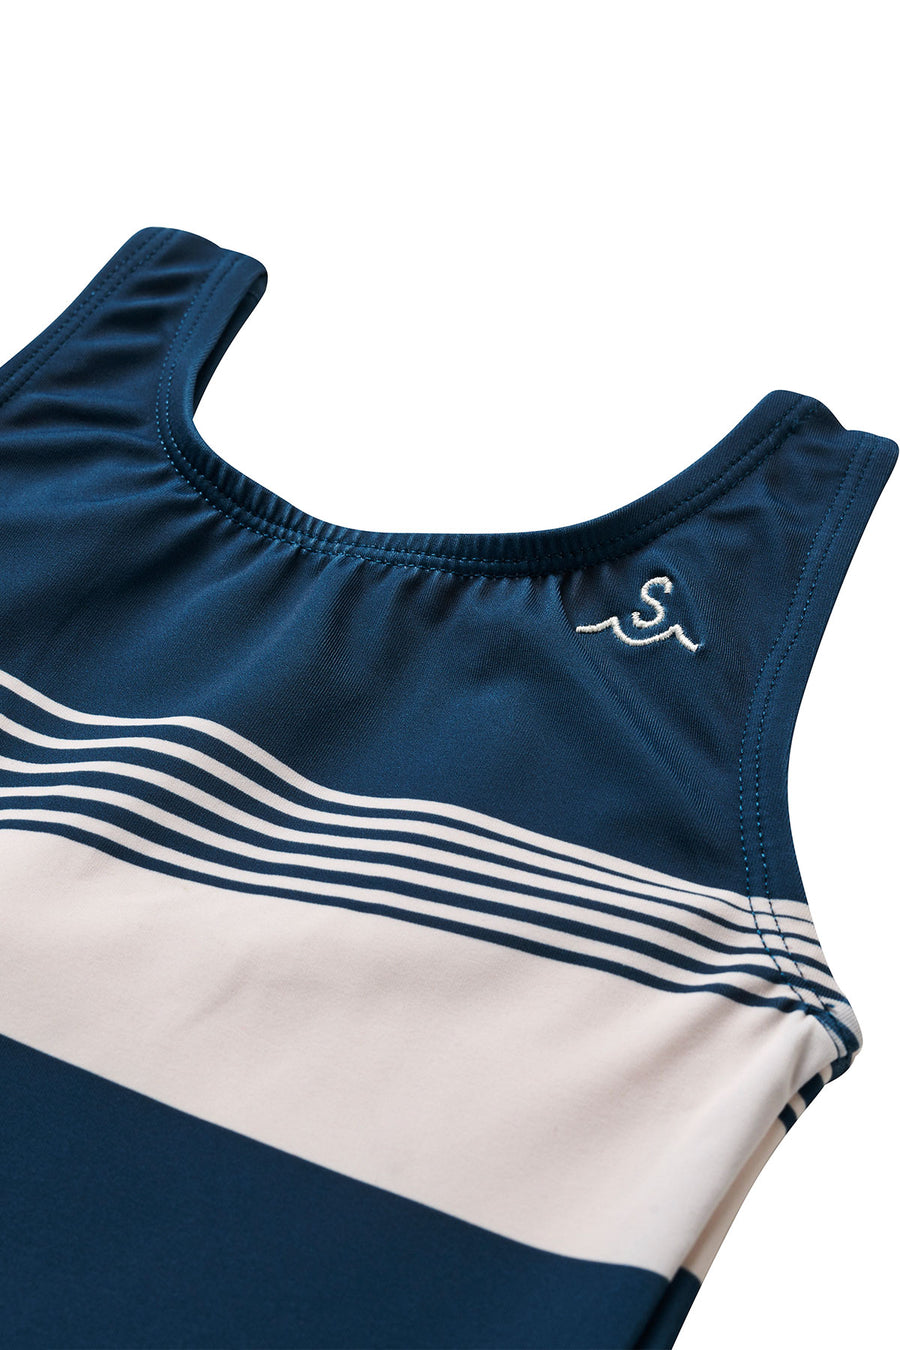 Seaesta Surf x Leah Bradley / Zippy Stripe Swimsuit